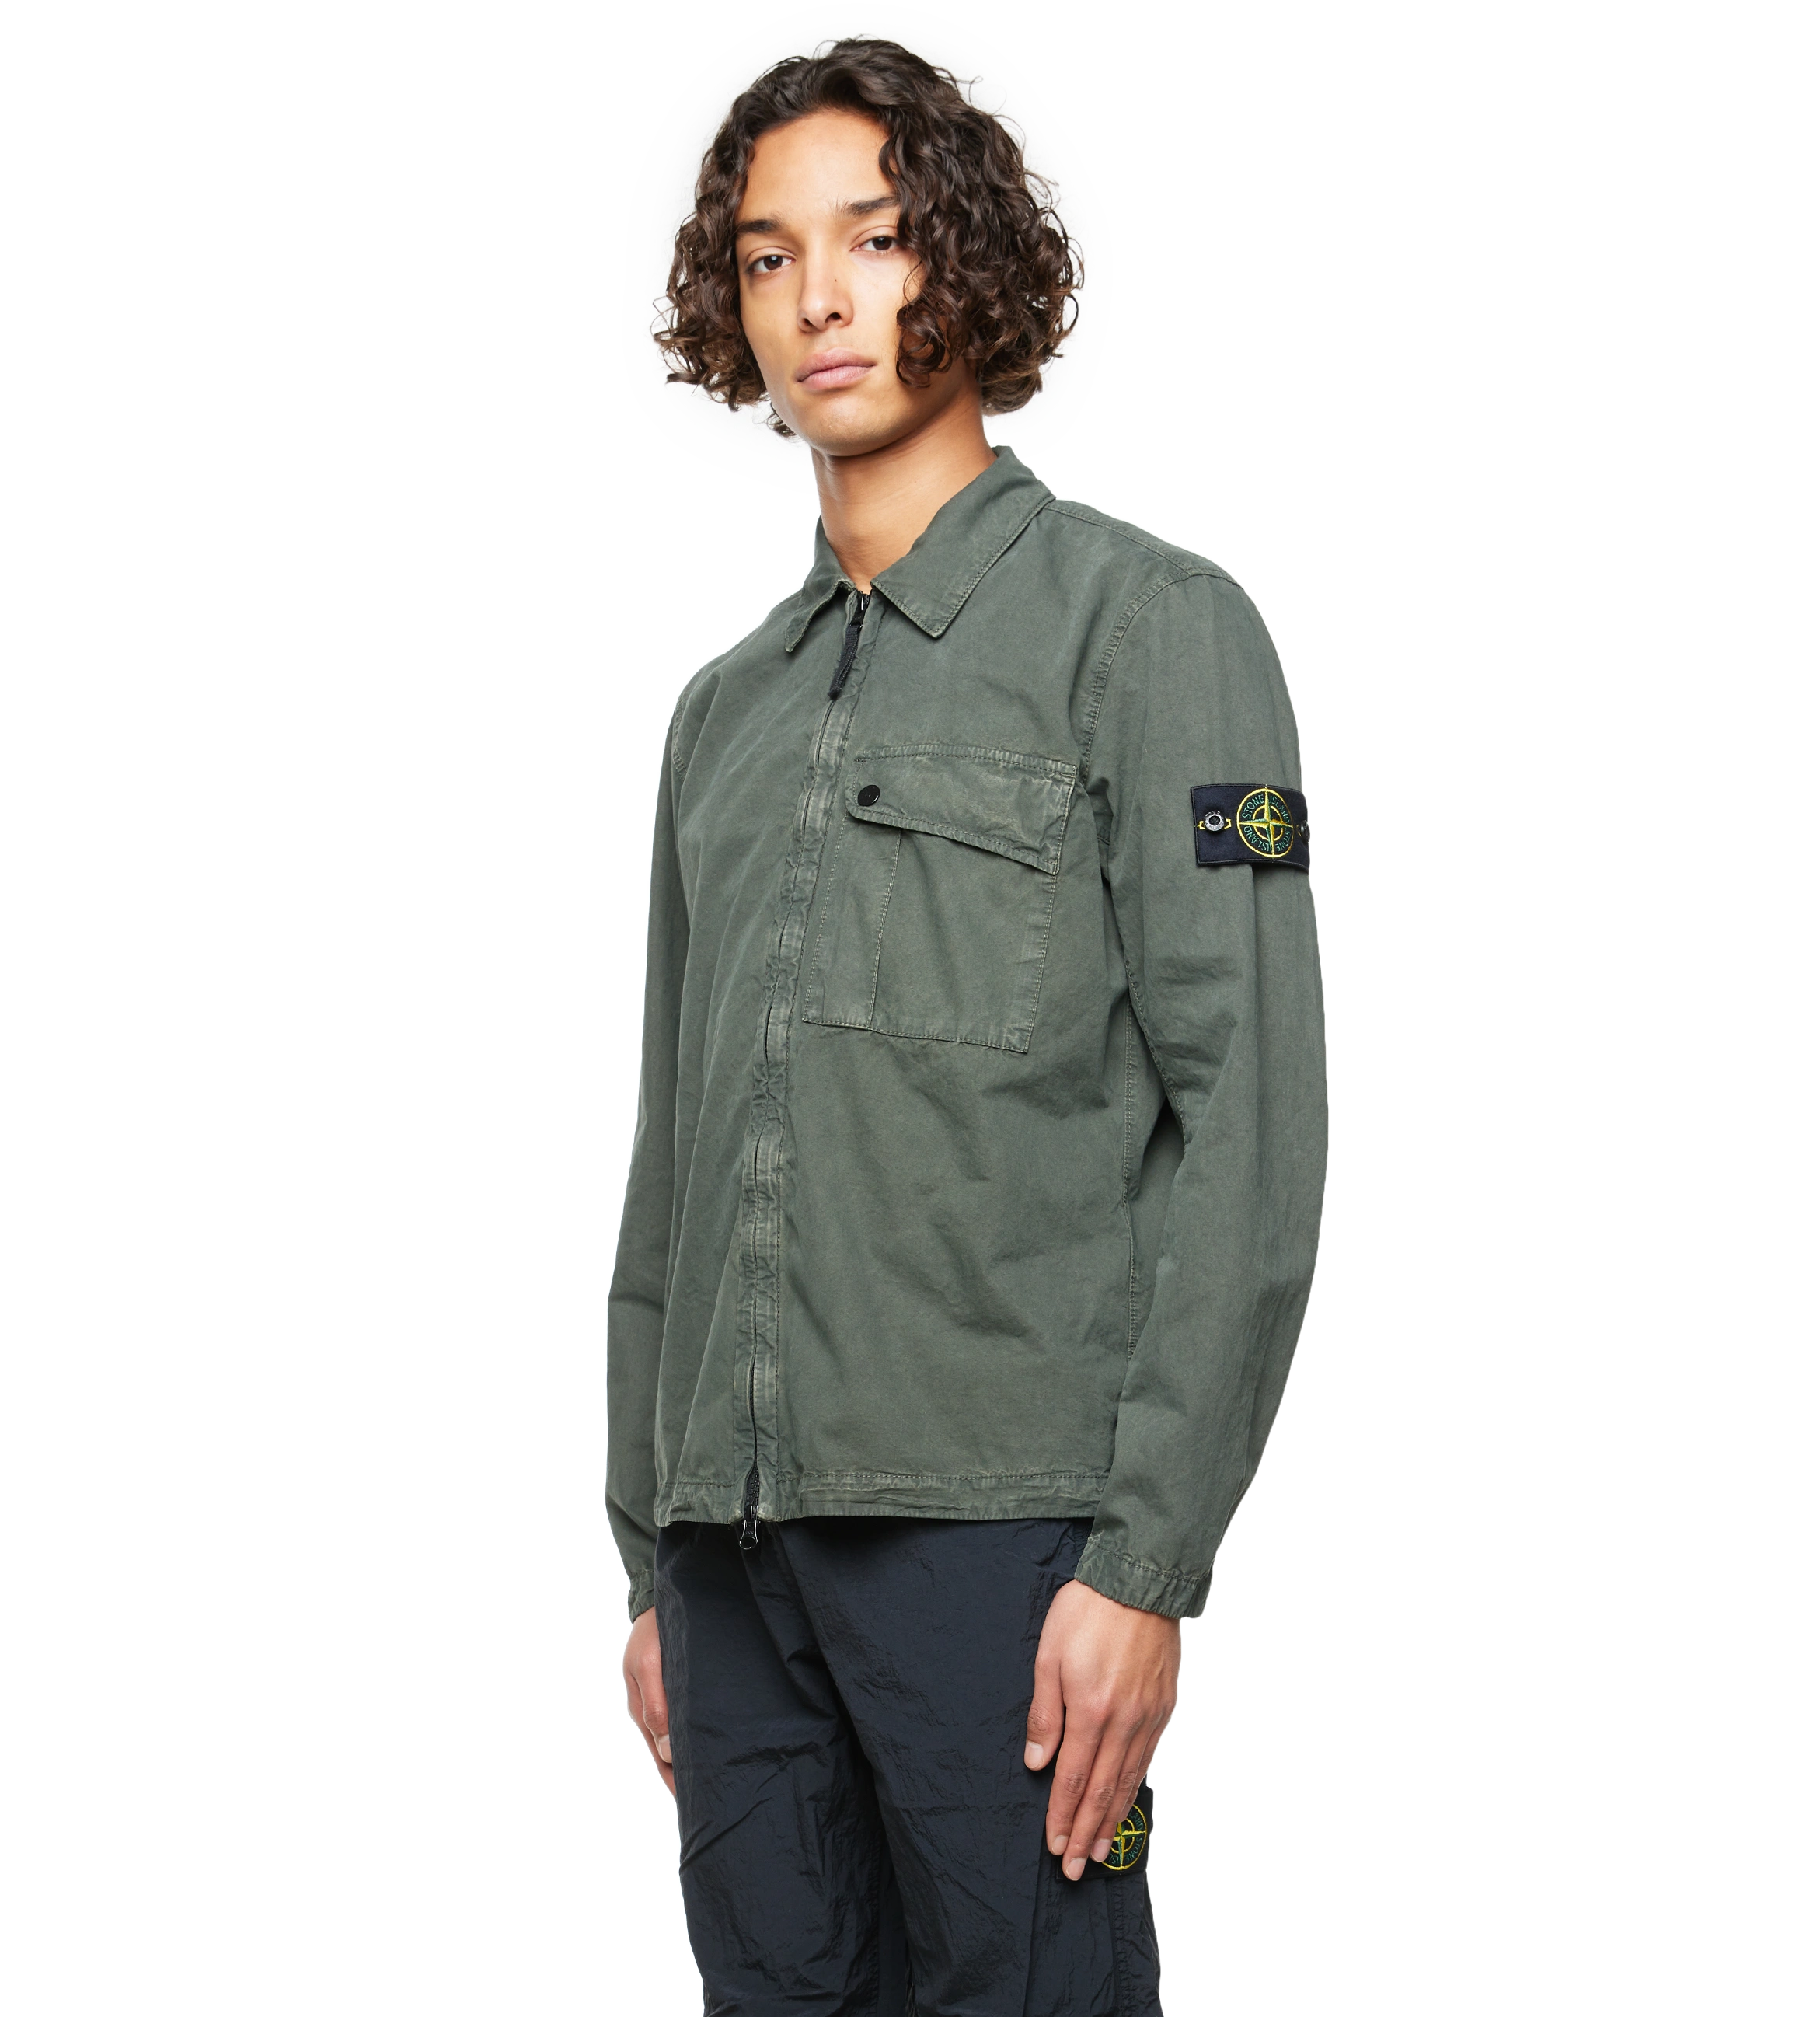 Compass-Patch Zip-up Shirt Green